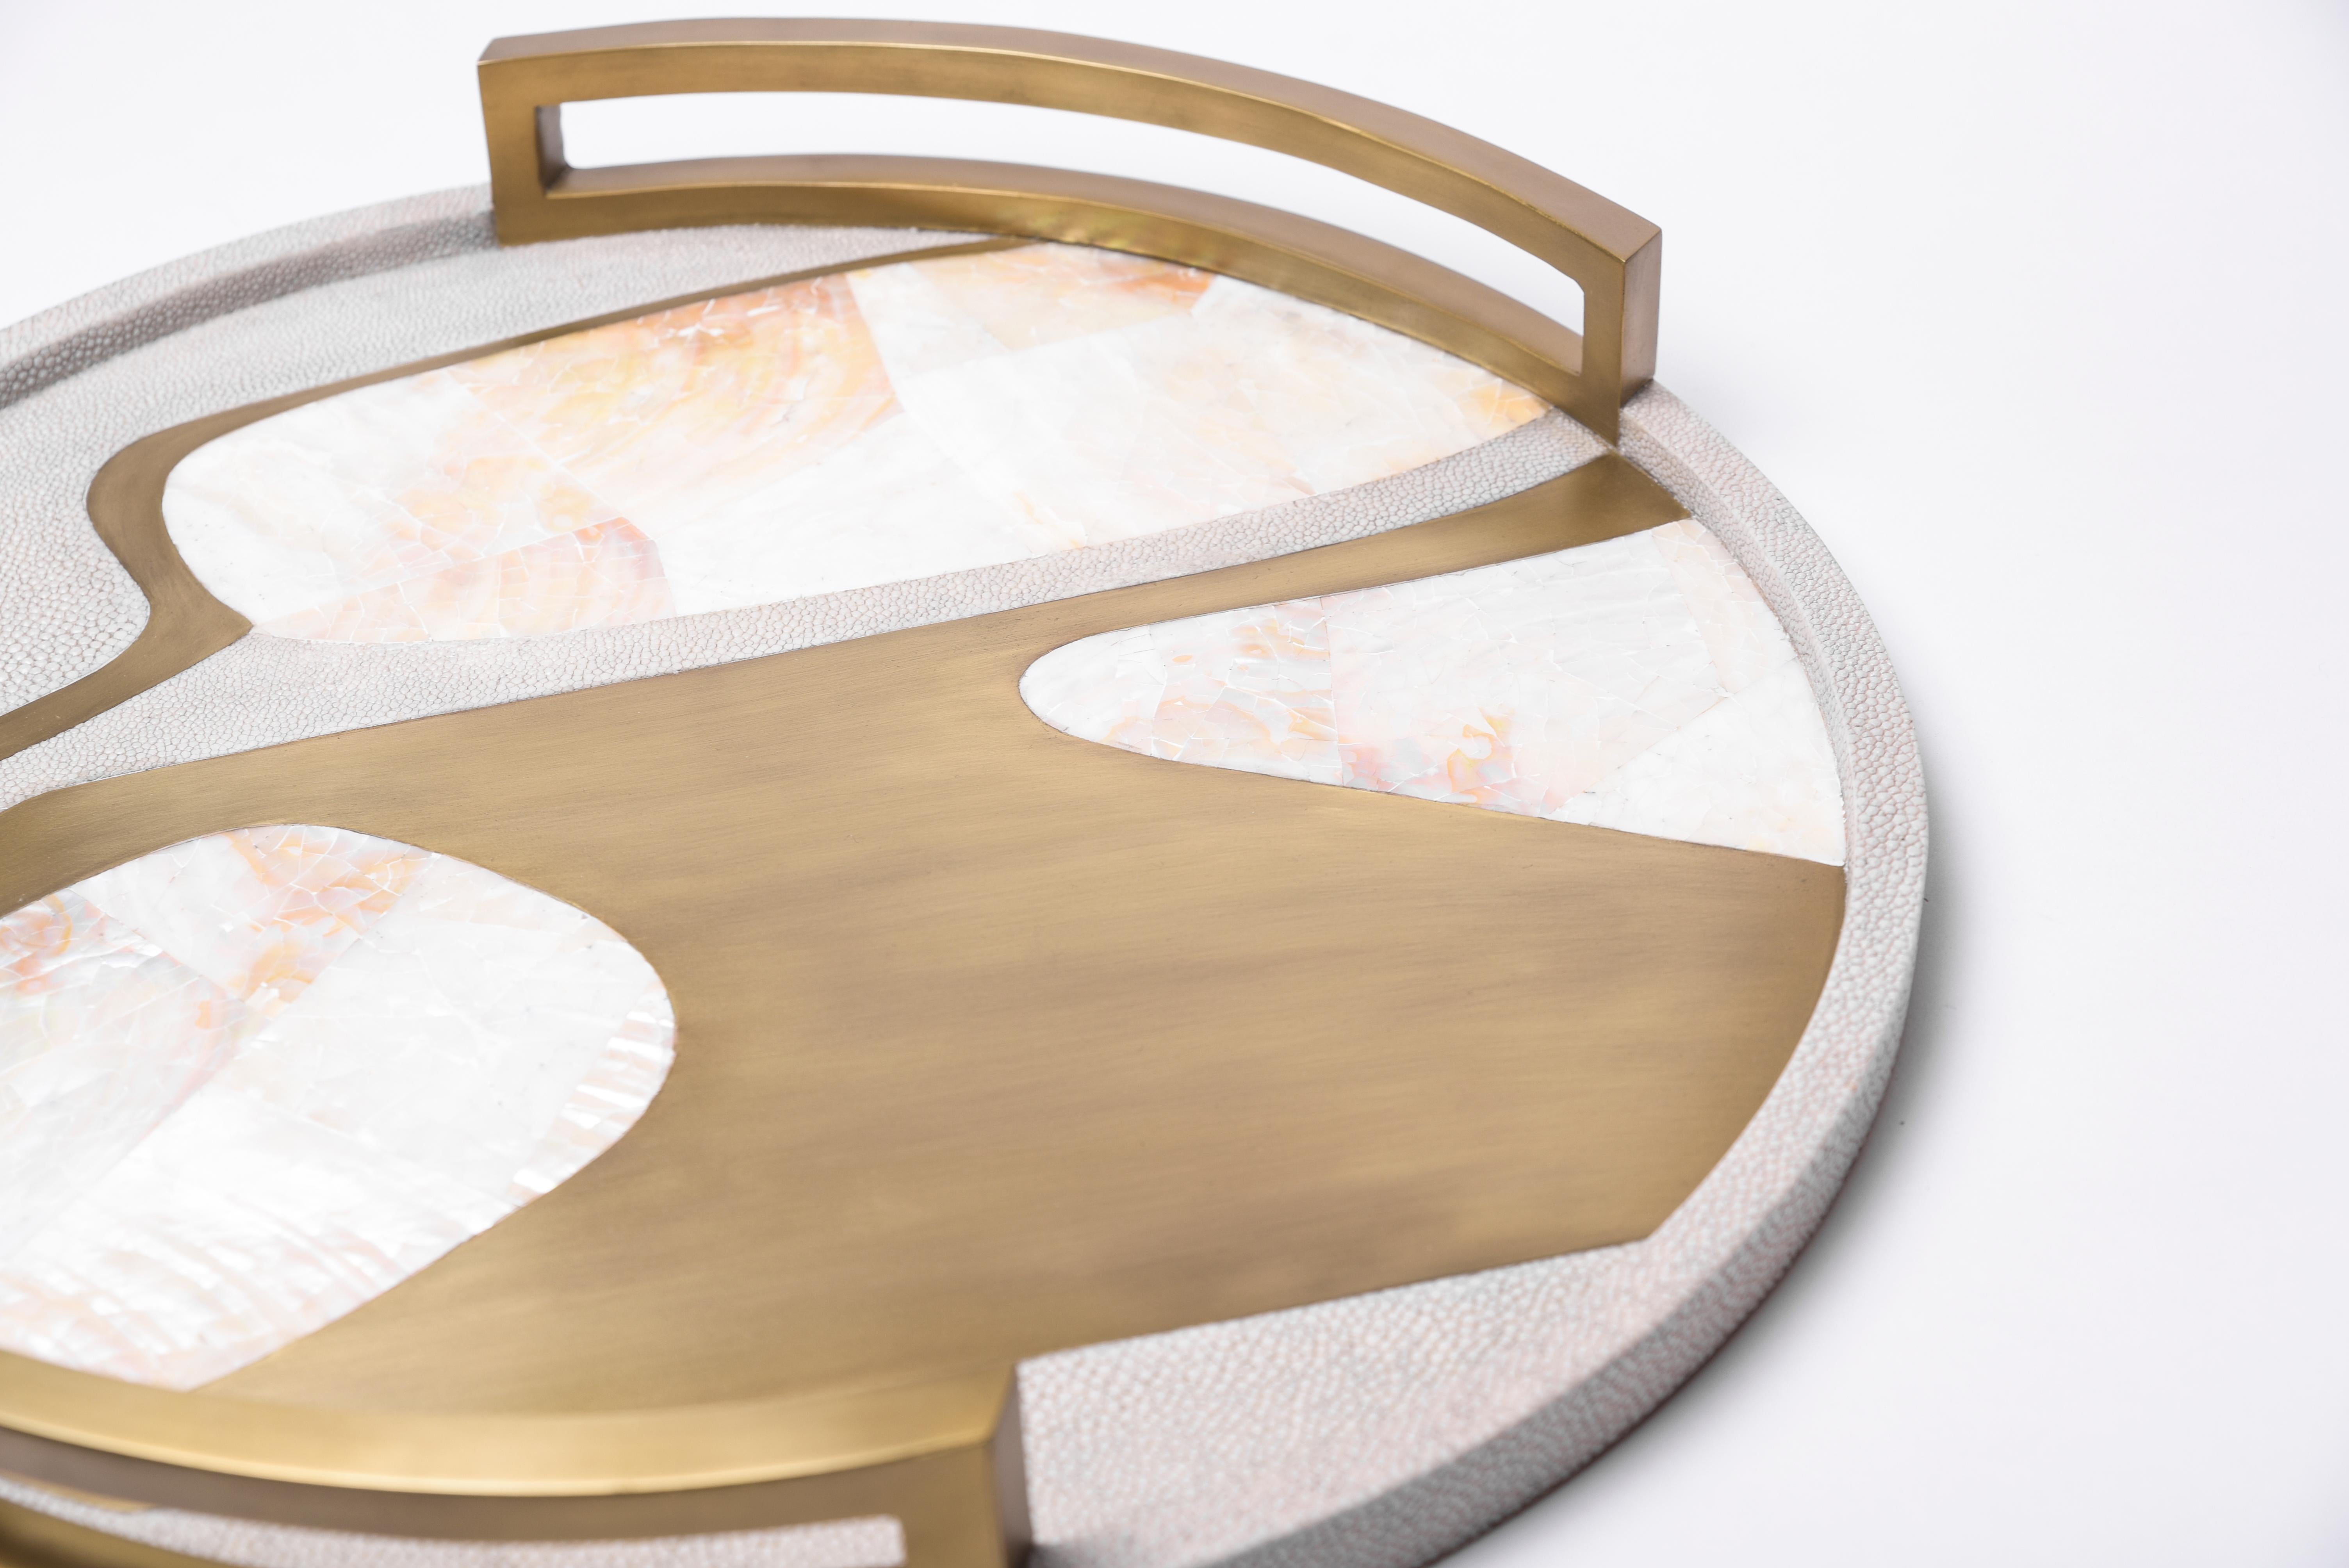 Das runde Cosmos-Tablett ist ein atemberaubendes Tischobjekt für jeden Raum. Erhältlich in heller oder dunkler Ausführung mit Intarsien aus Chagrin, Federmuschel und Bronze-Patina-Messing.

- Maße: 48.5 Durchmesser x 6,3 cm

Alle Stücke von R &